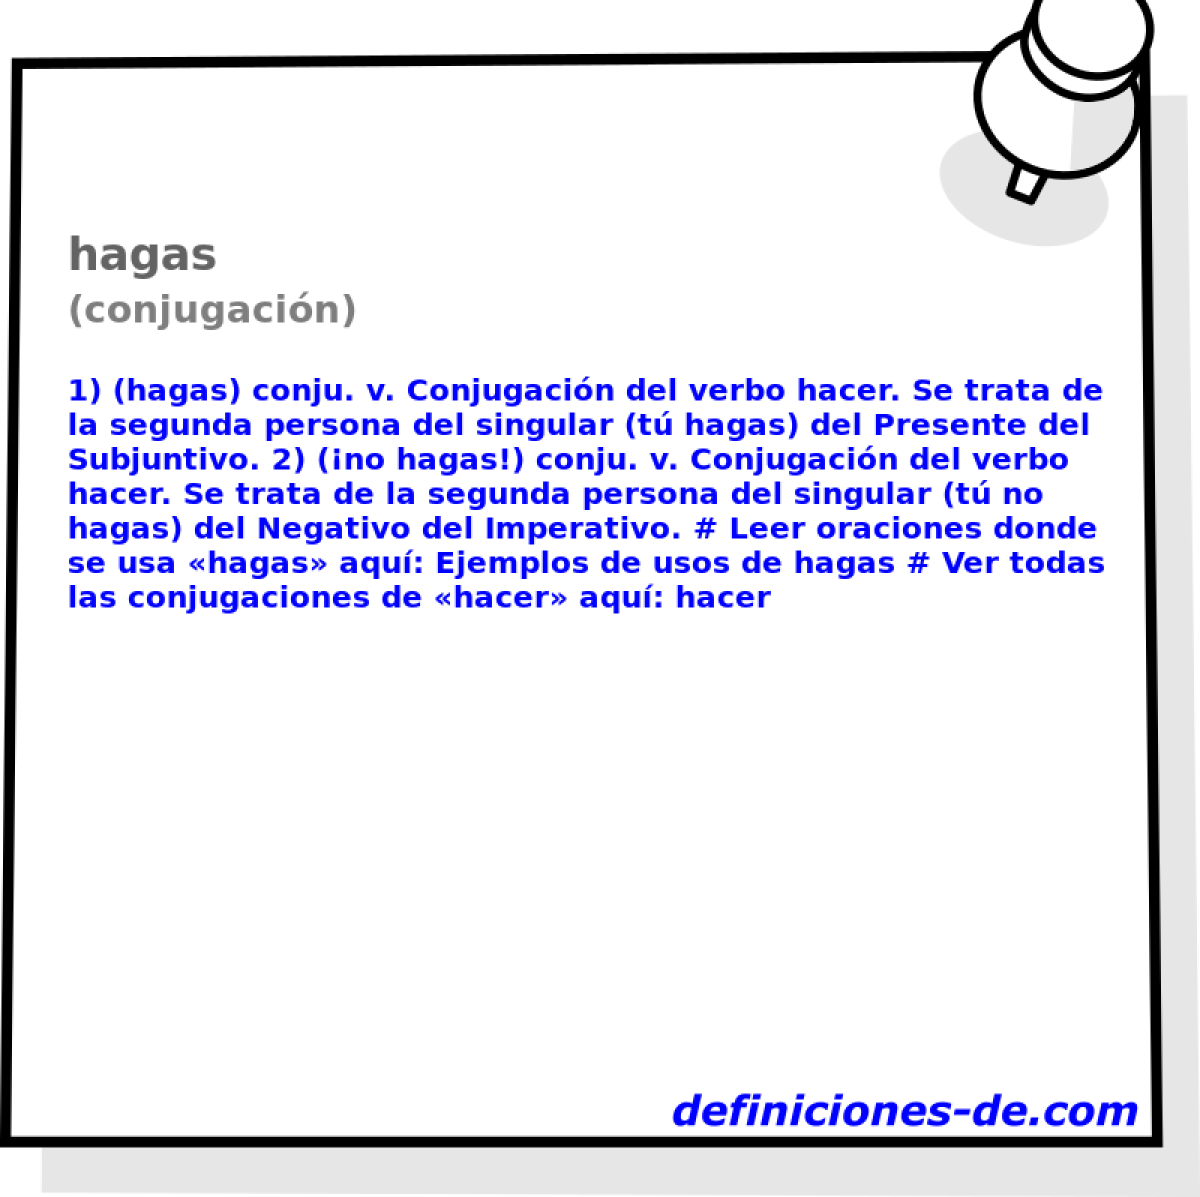 hagas (conjugacin)